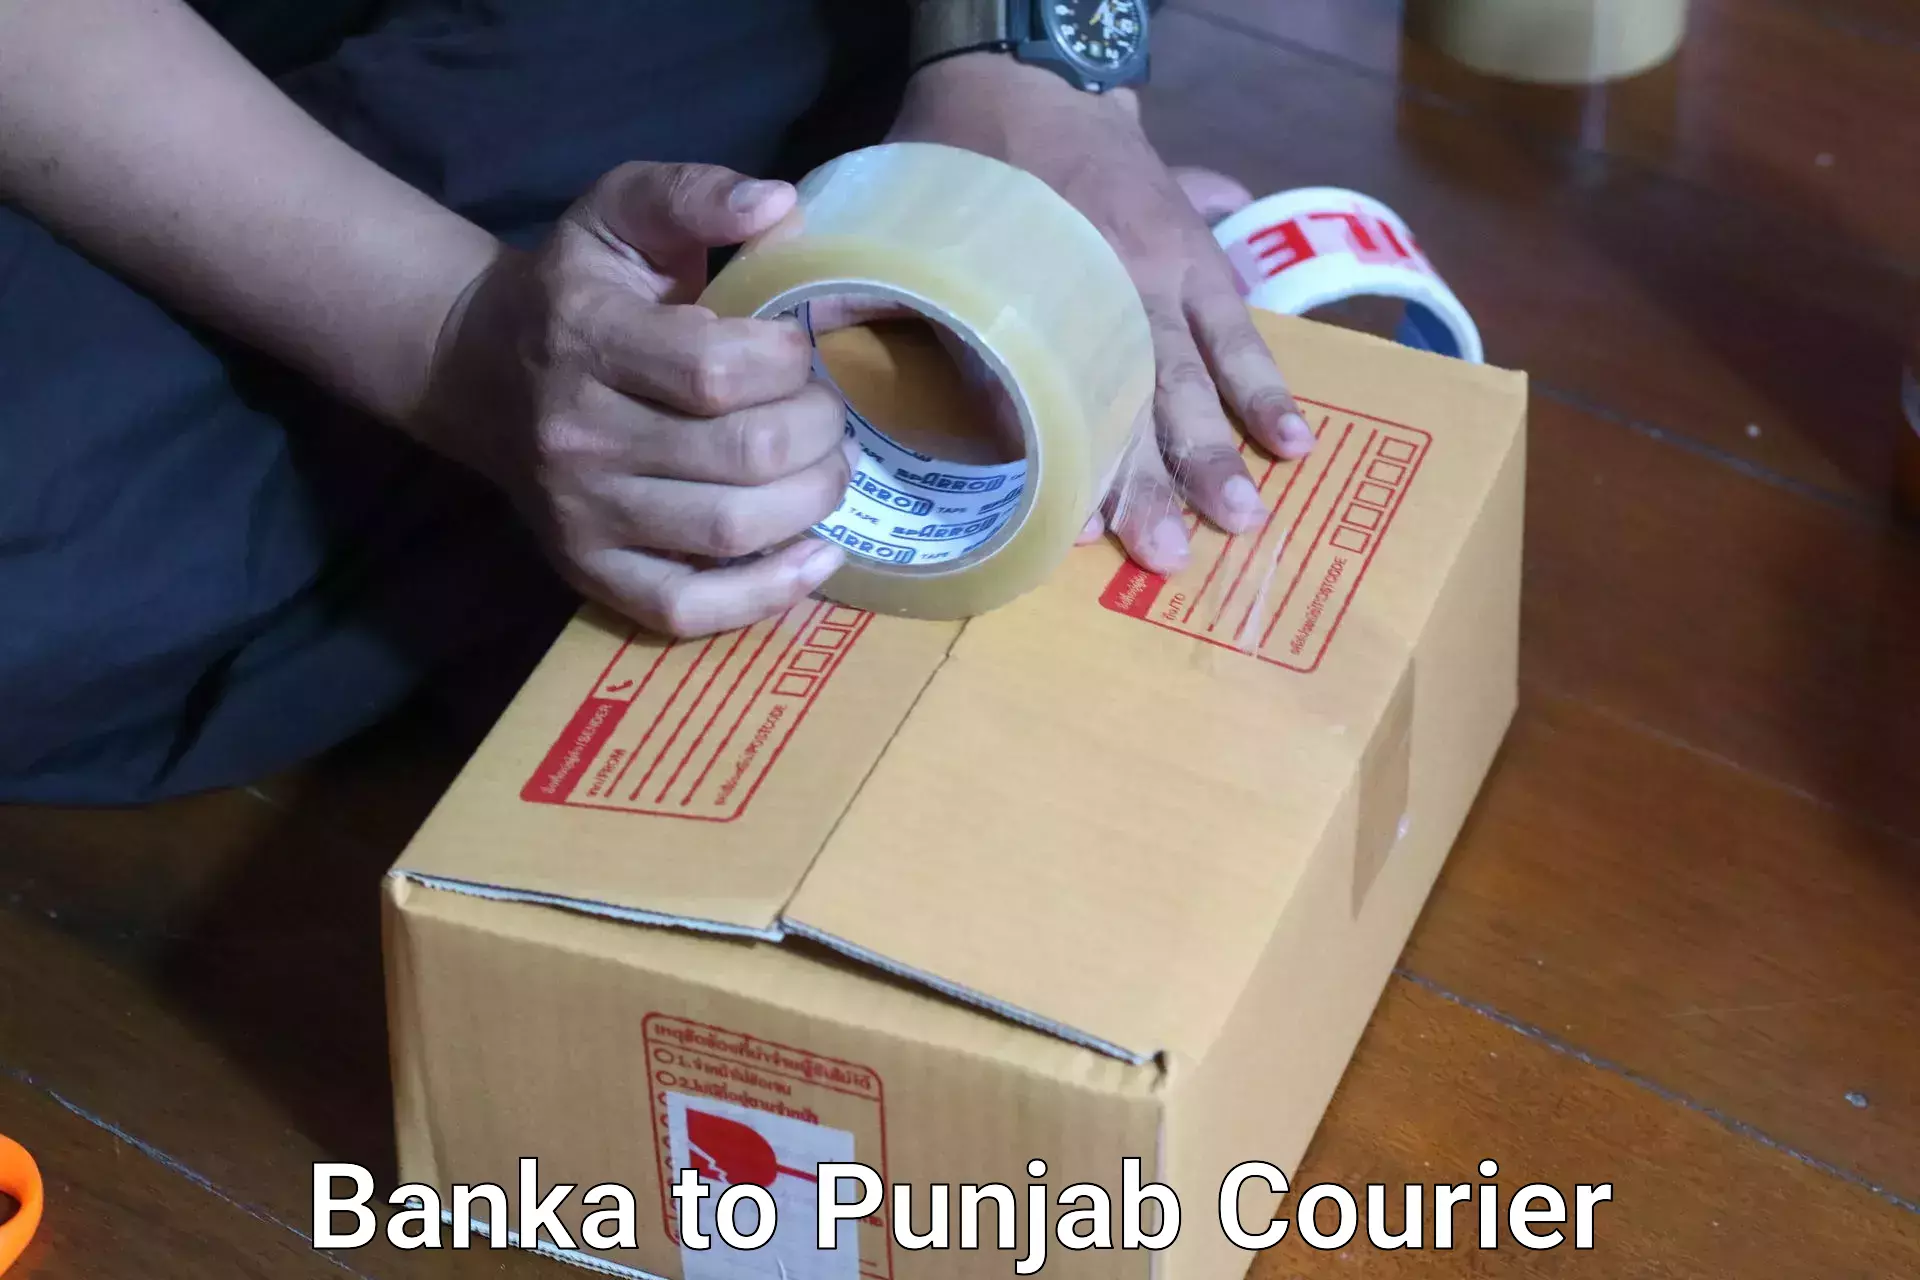 Luggage delivery logistics Banka to Central University of Punjab Bathinda